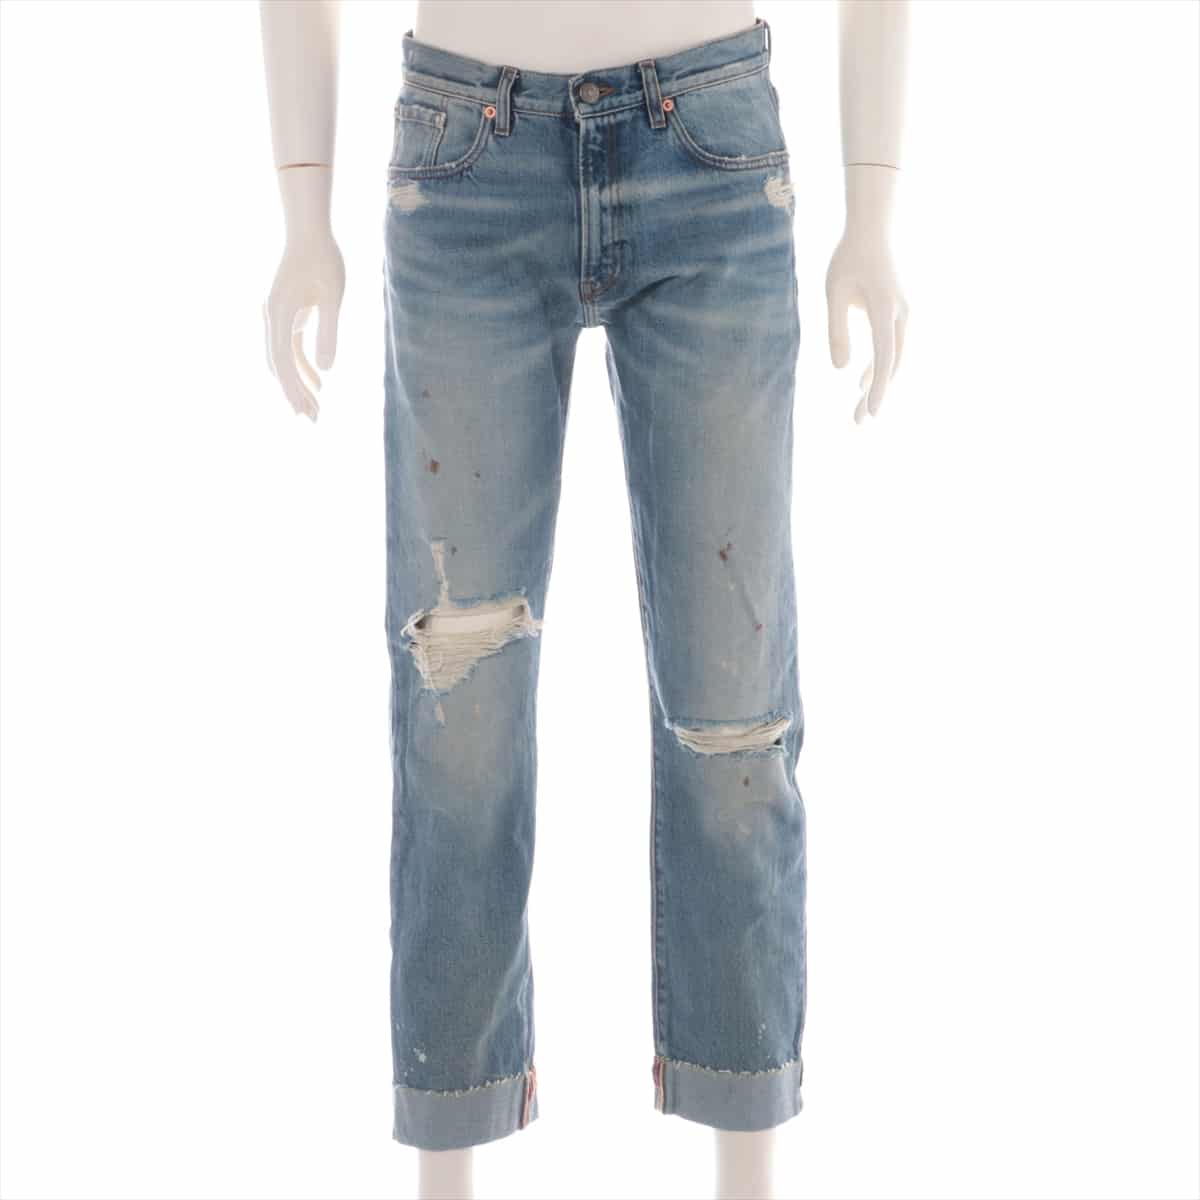 Gucci Cotton Denim pants 30 Men's Blue  Damage processing cropped